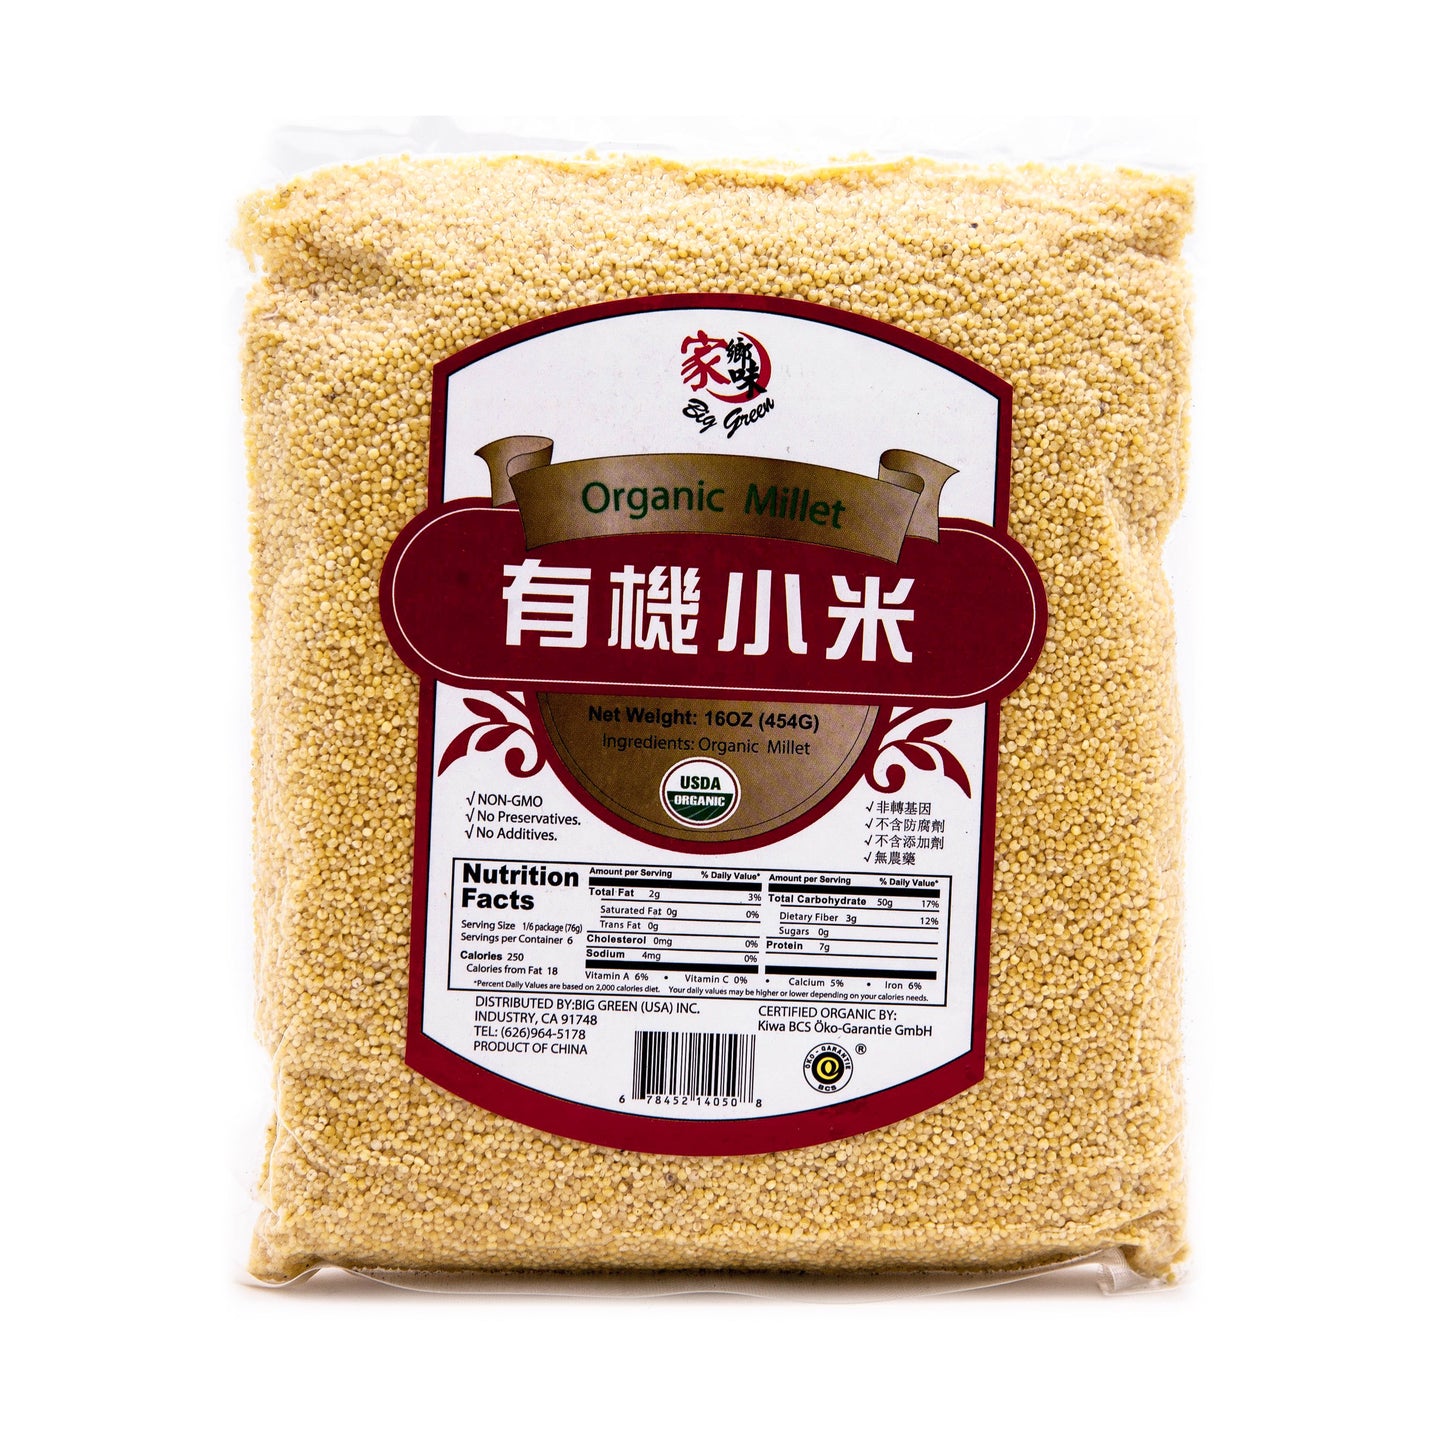 Organic Millet 家鄉味 有機小米